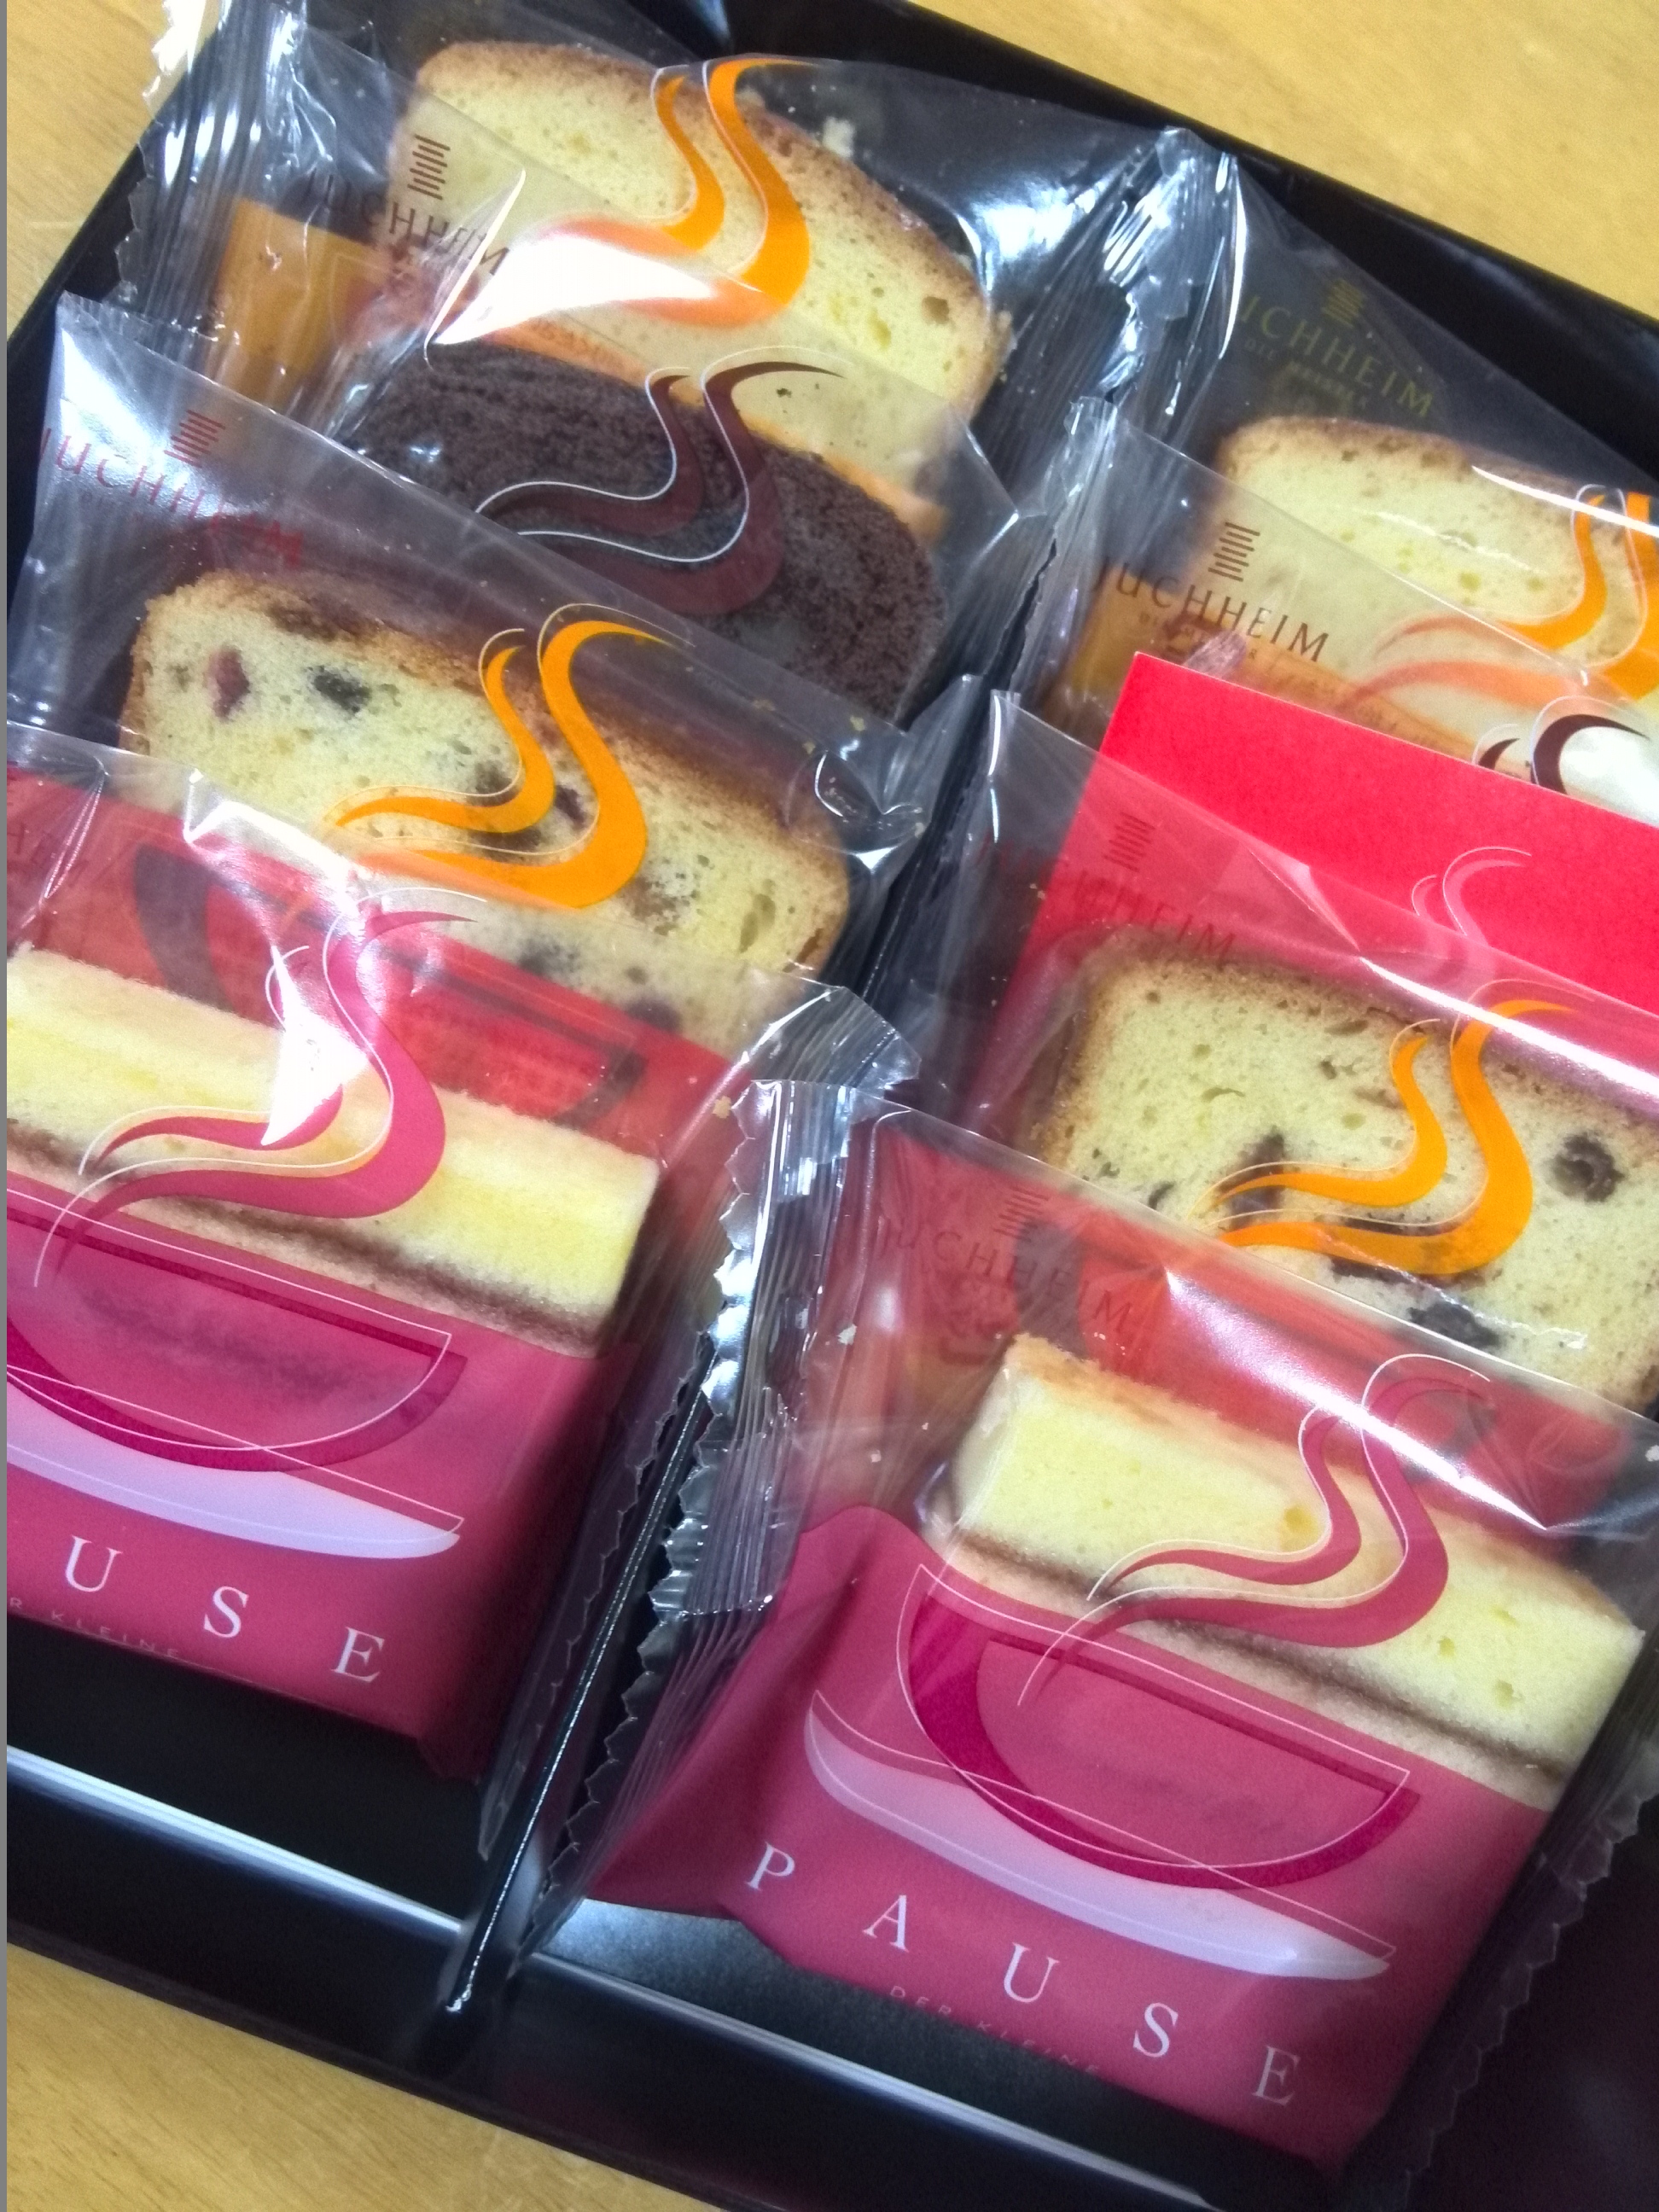 ユーハイム バターケーキの詰め合わせ パウゼ 大阪 奈良グルメのブログ ミシュランごっこ